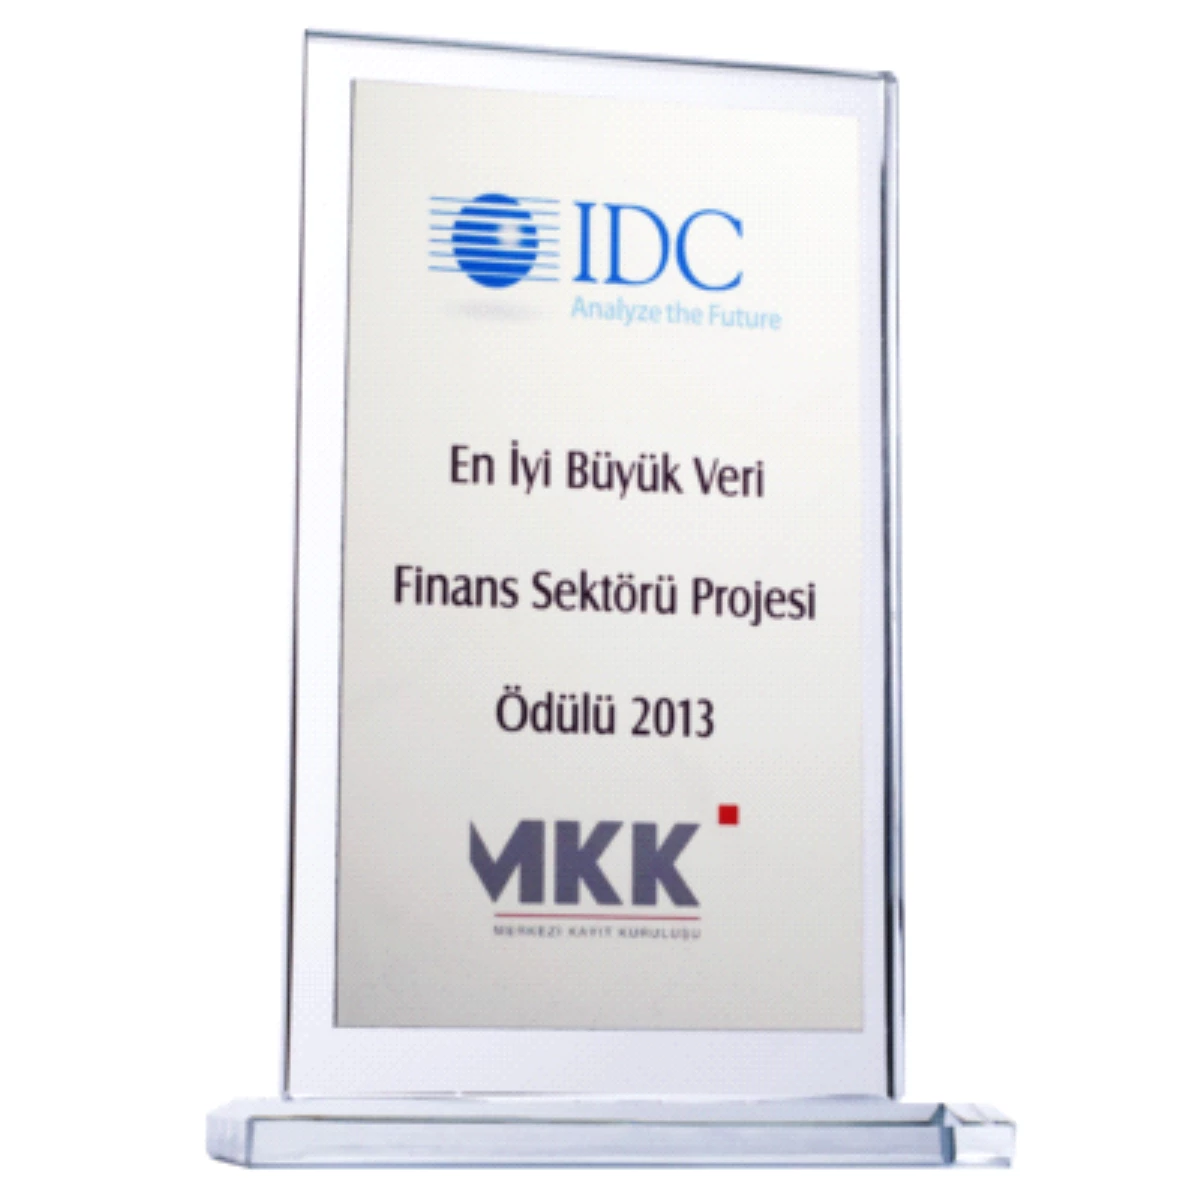 Merkezi Kayıt Kuruluşu\'nun (Mkk) E-Veri Projesi "Finans Sektörü Kategorisinde En İyi Büyük Veri...